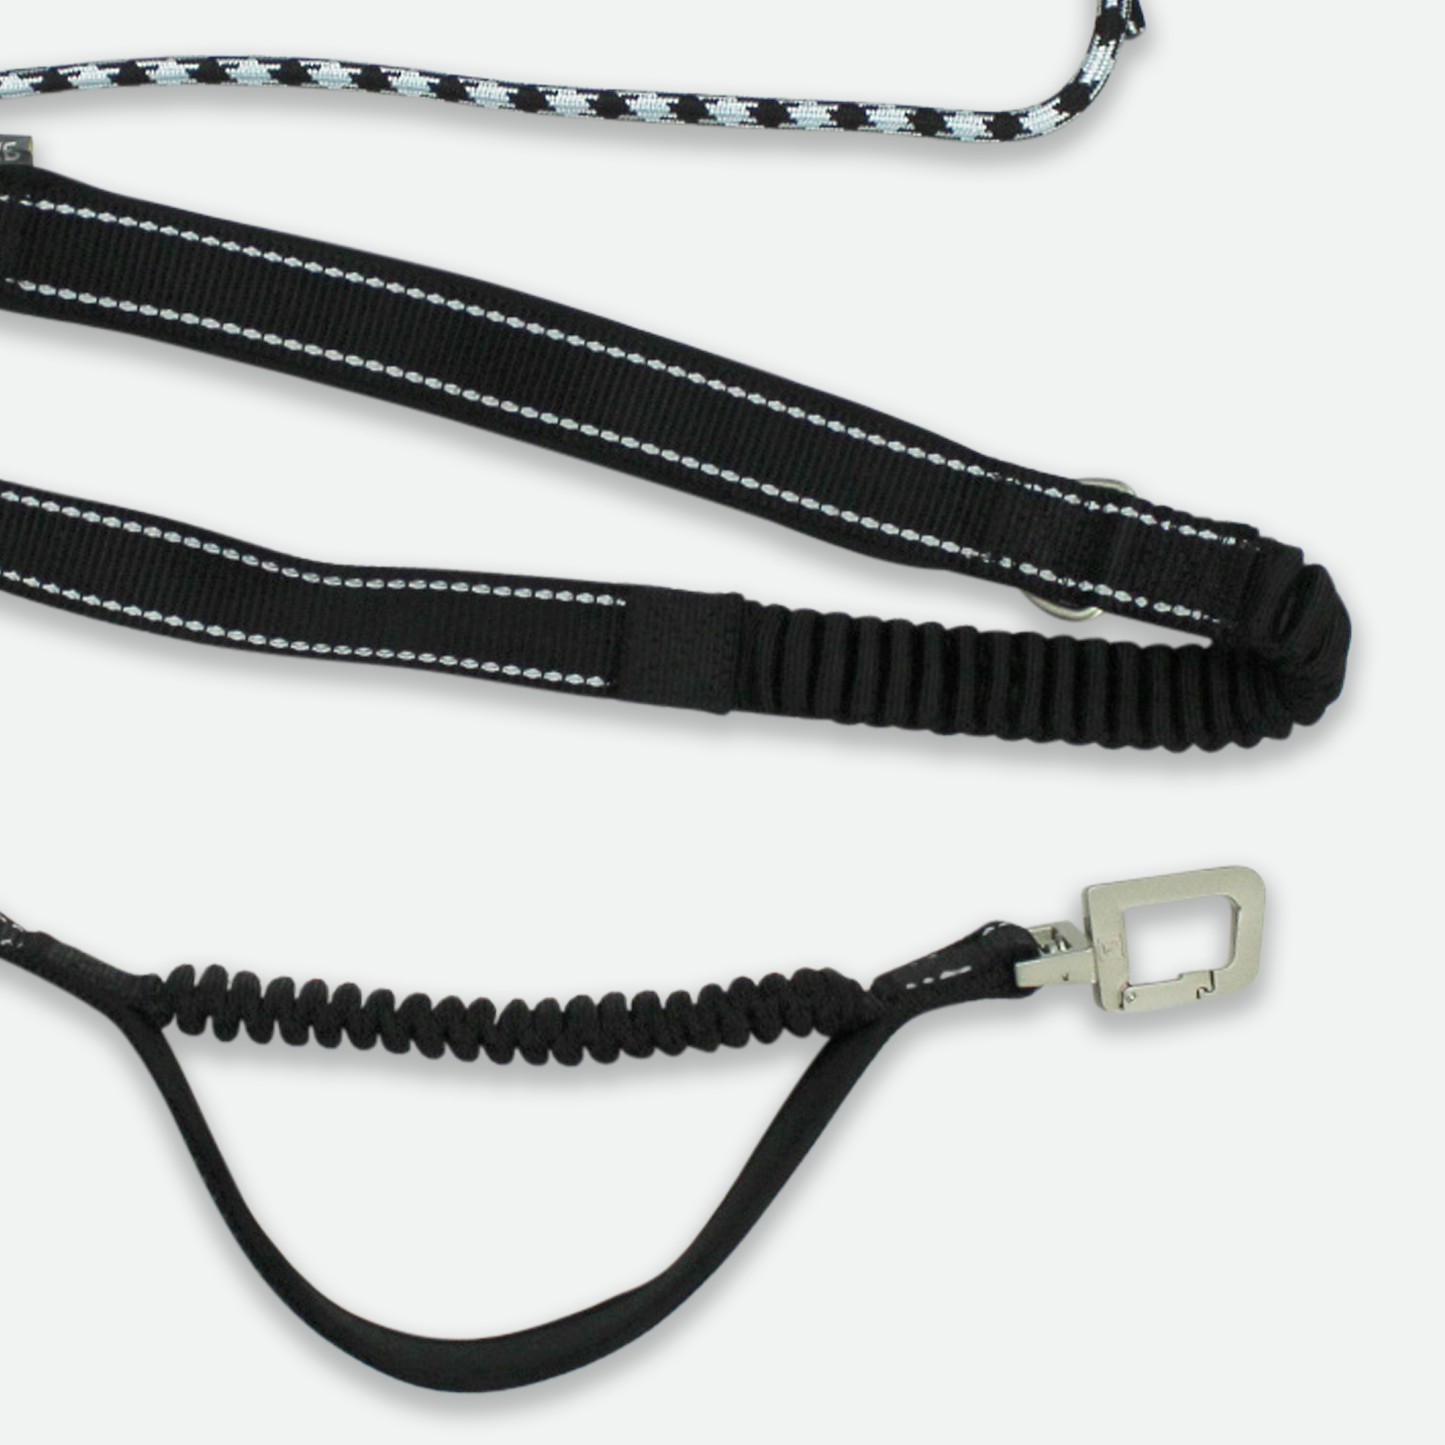 Belt & bungee leash kit for running, black